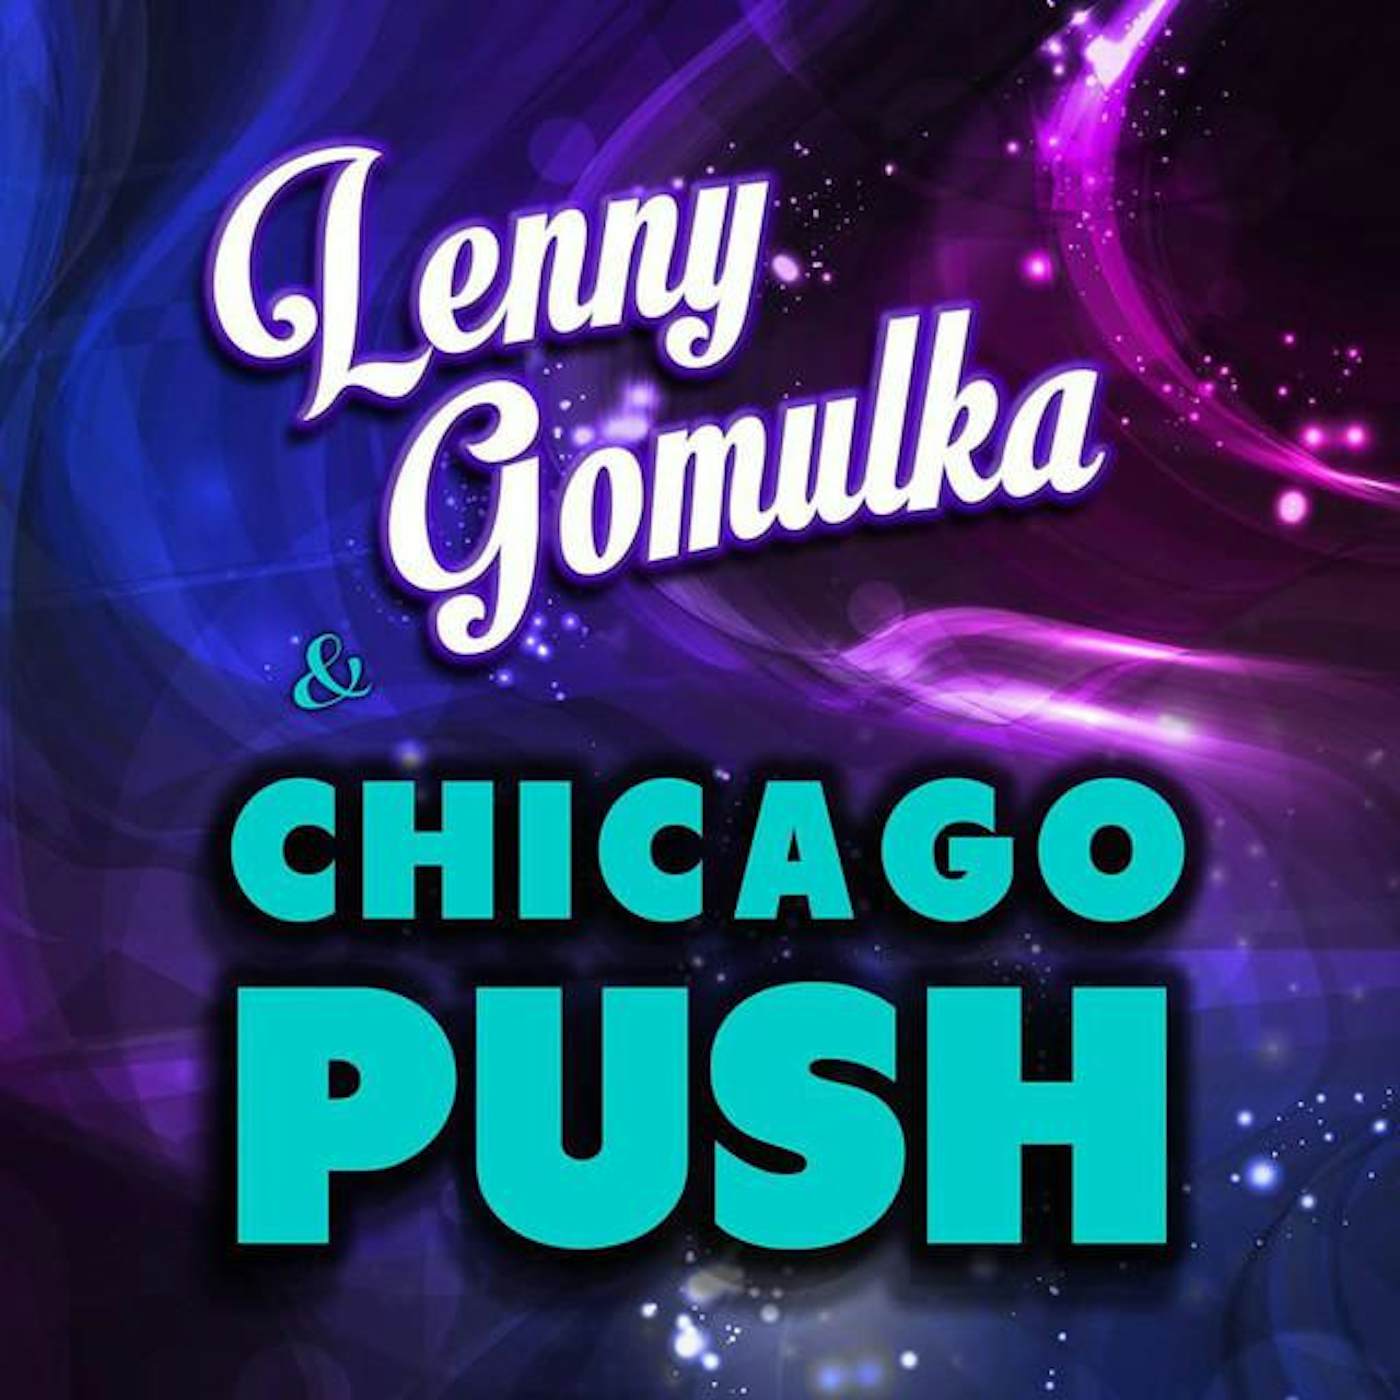 Lenny Gomulka & Chicago Push